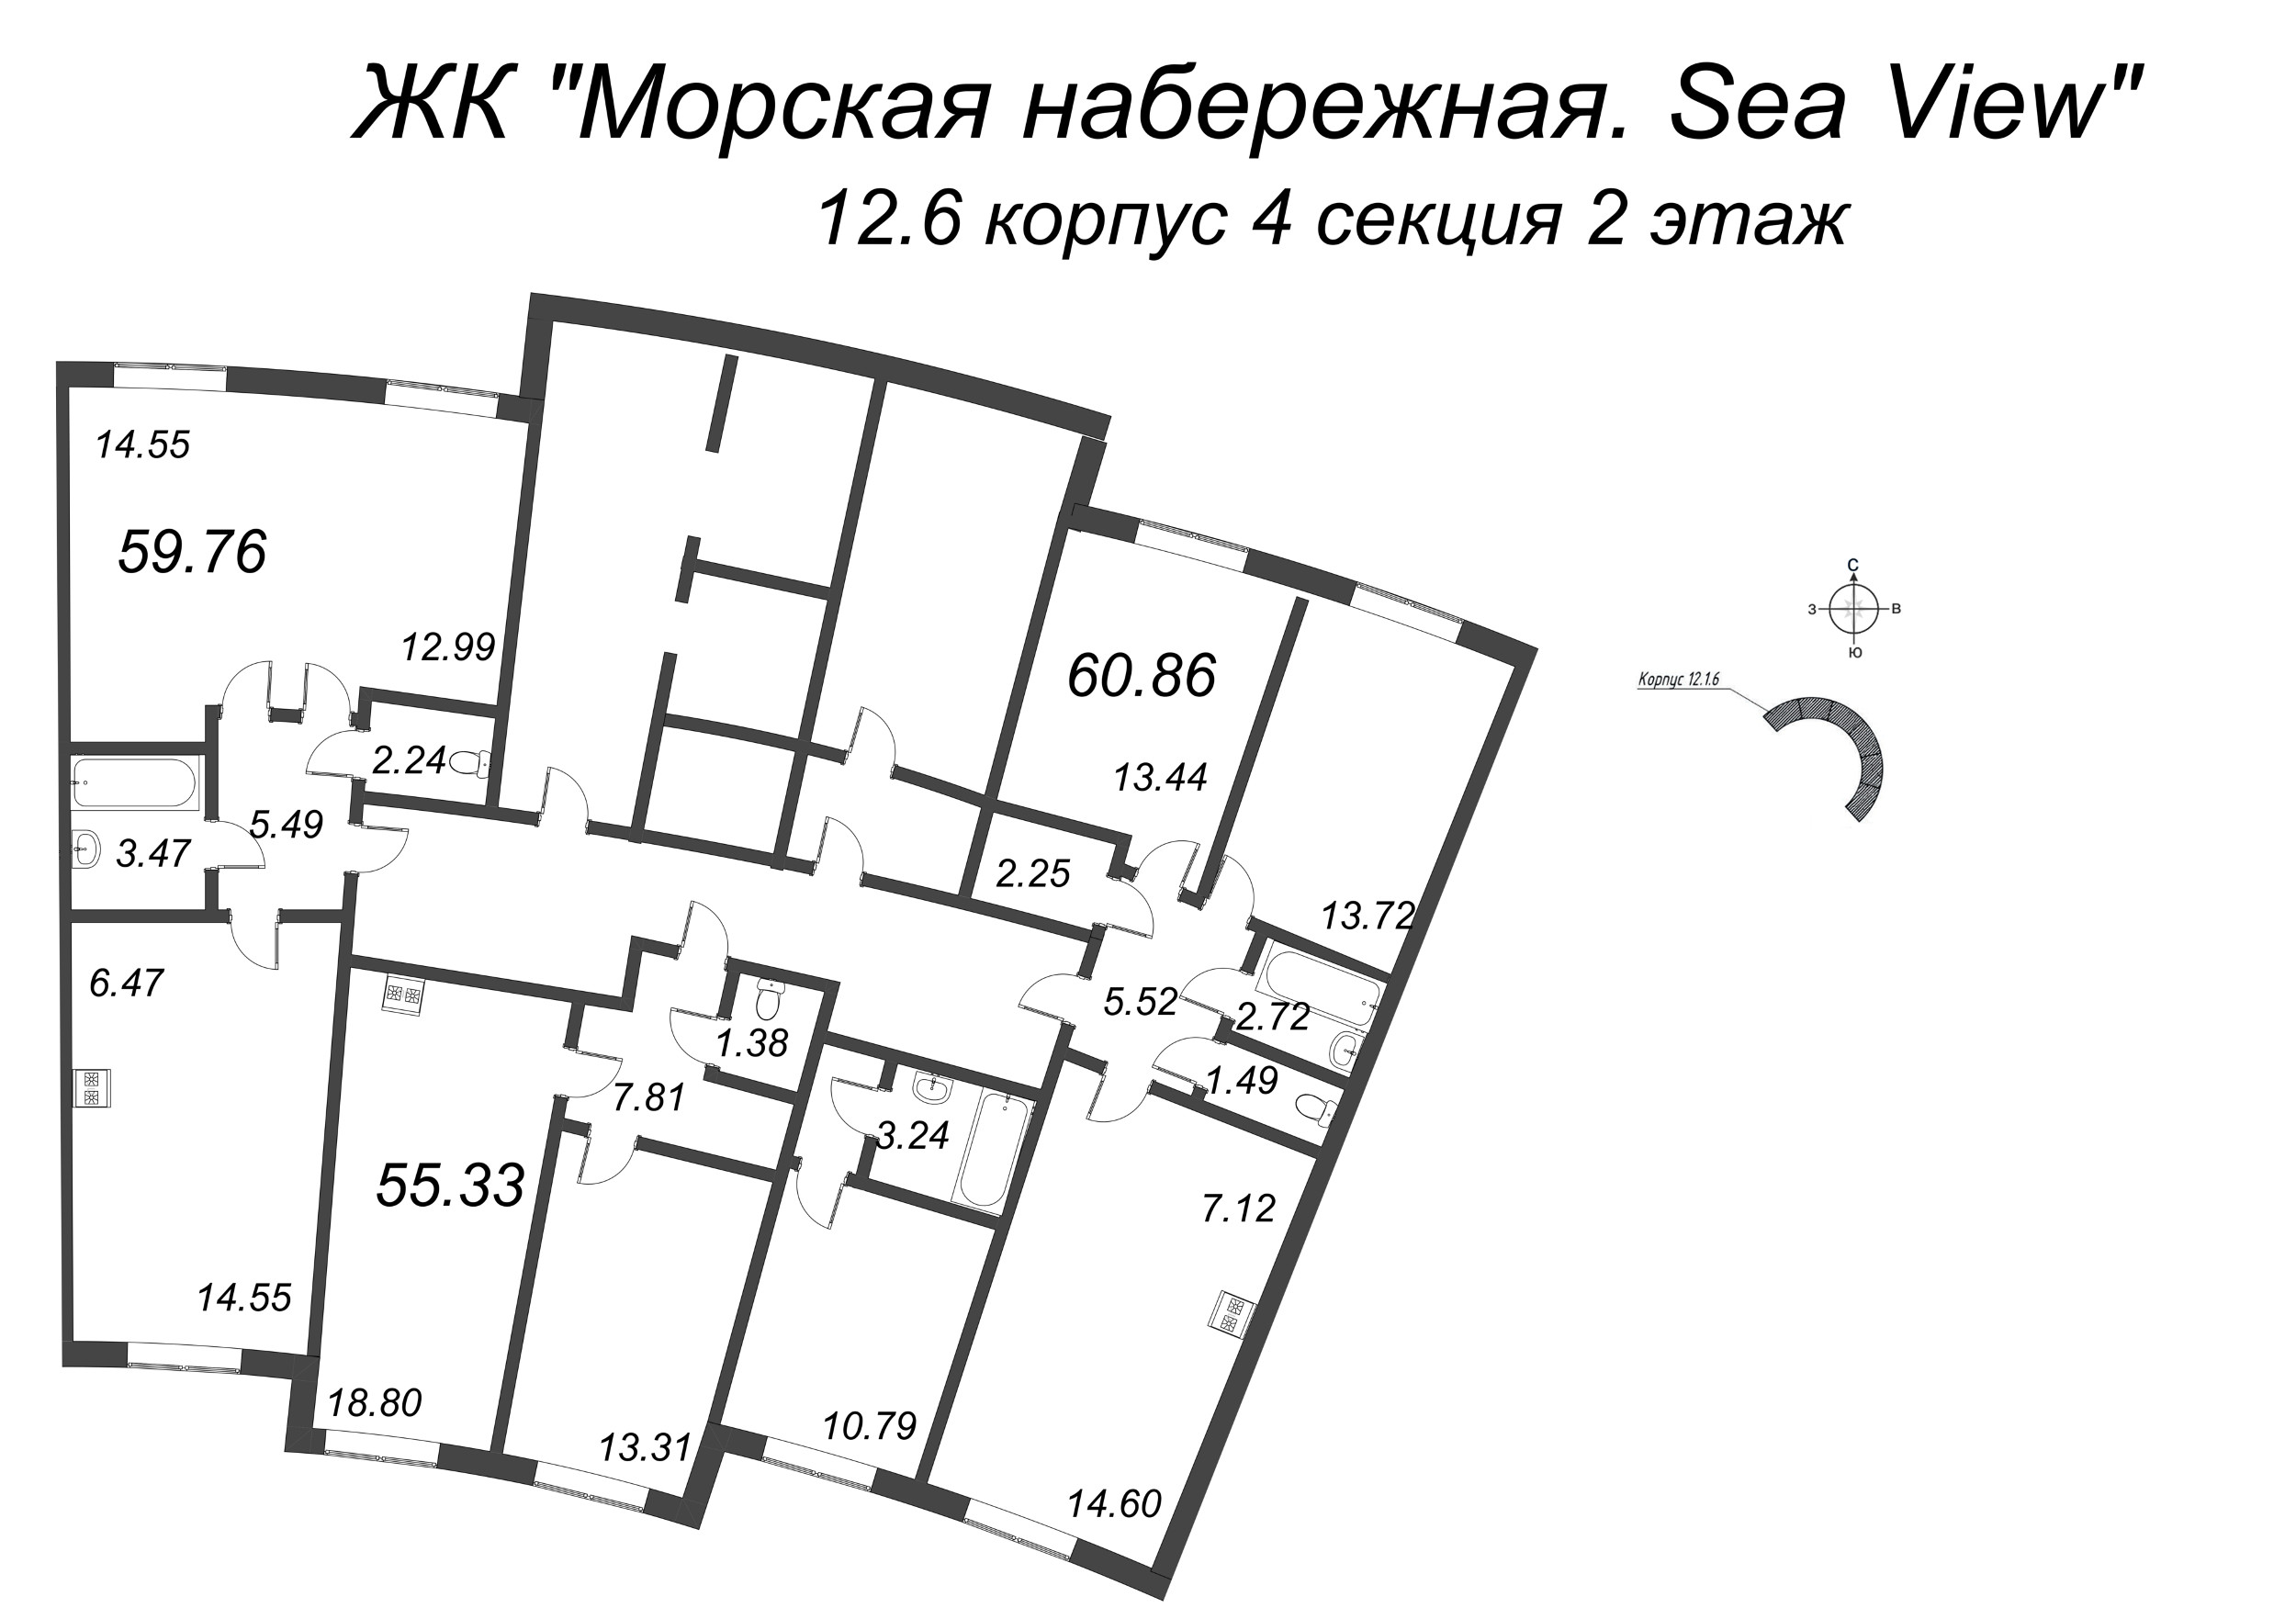 3-комнатная (Евро) квартира, 59.76 м² в ЖК "Морская набережная. SeaView" - планировка этажа